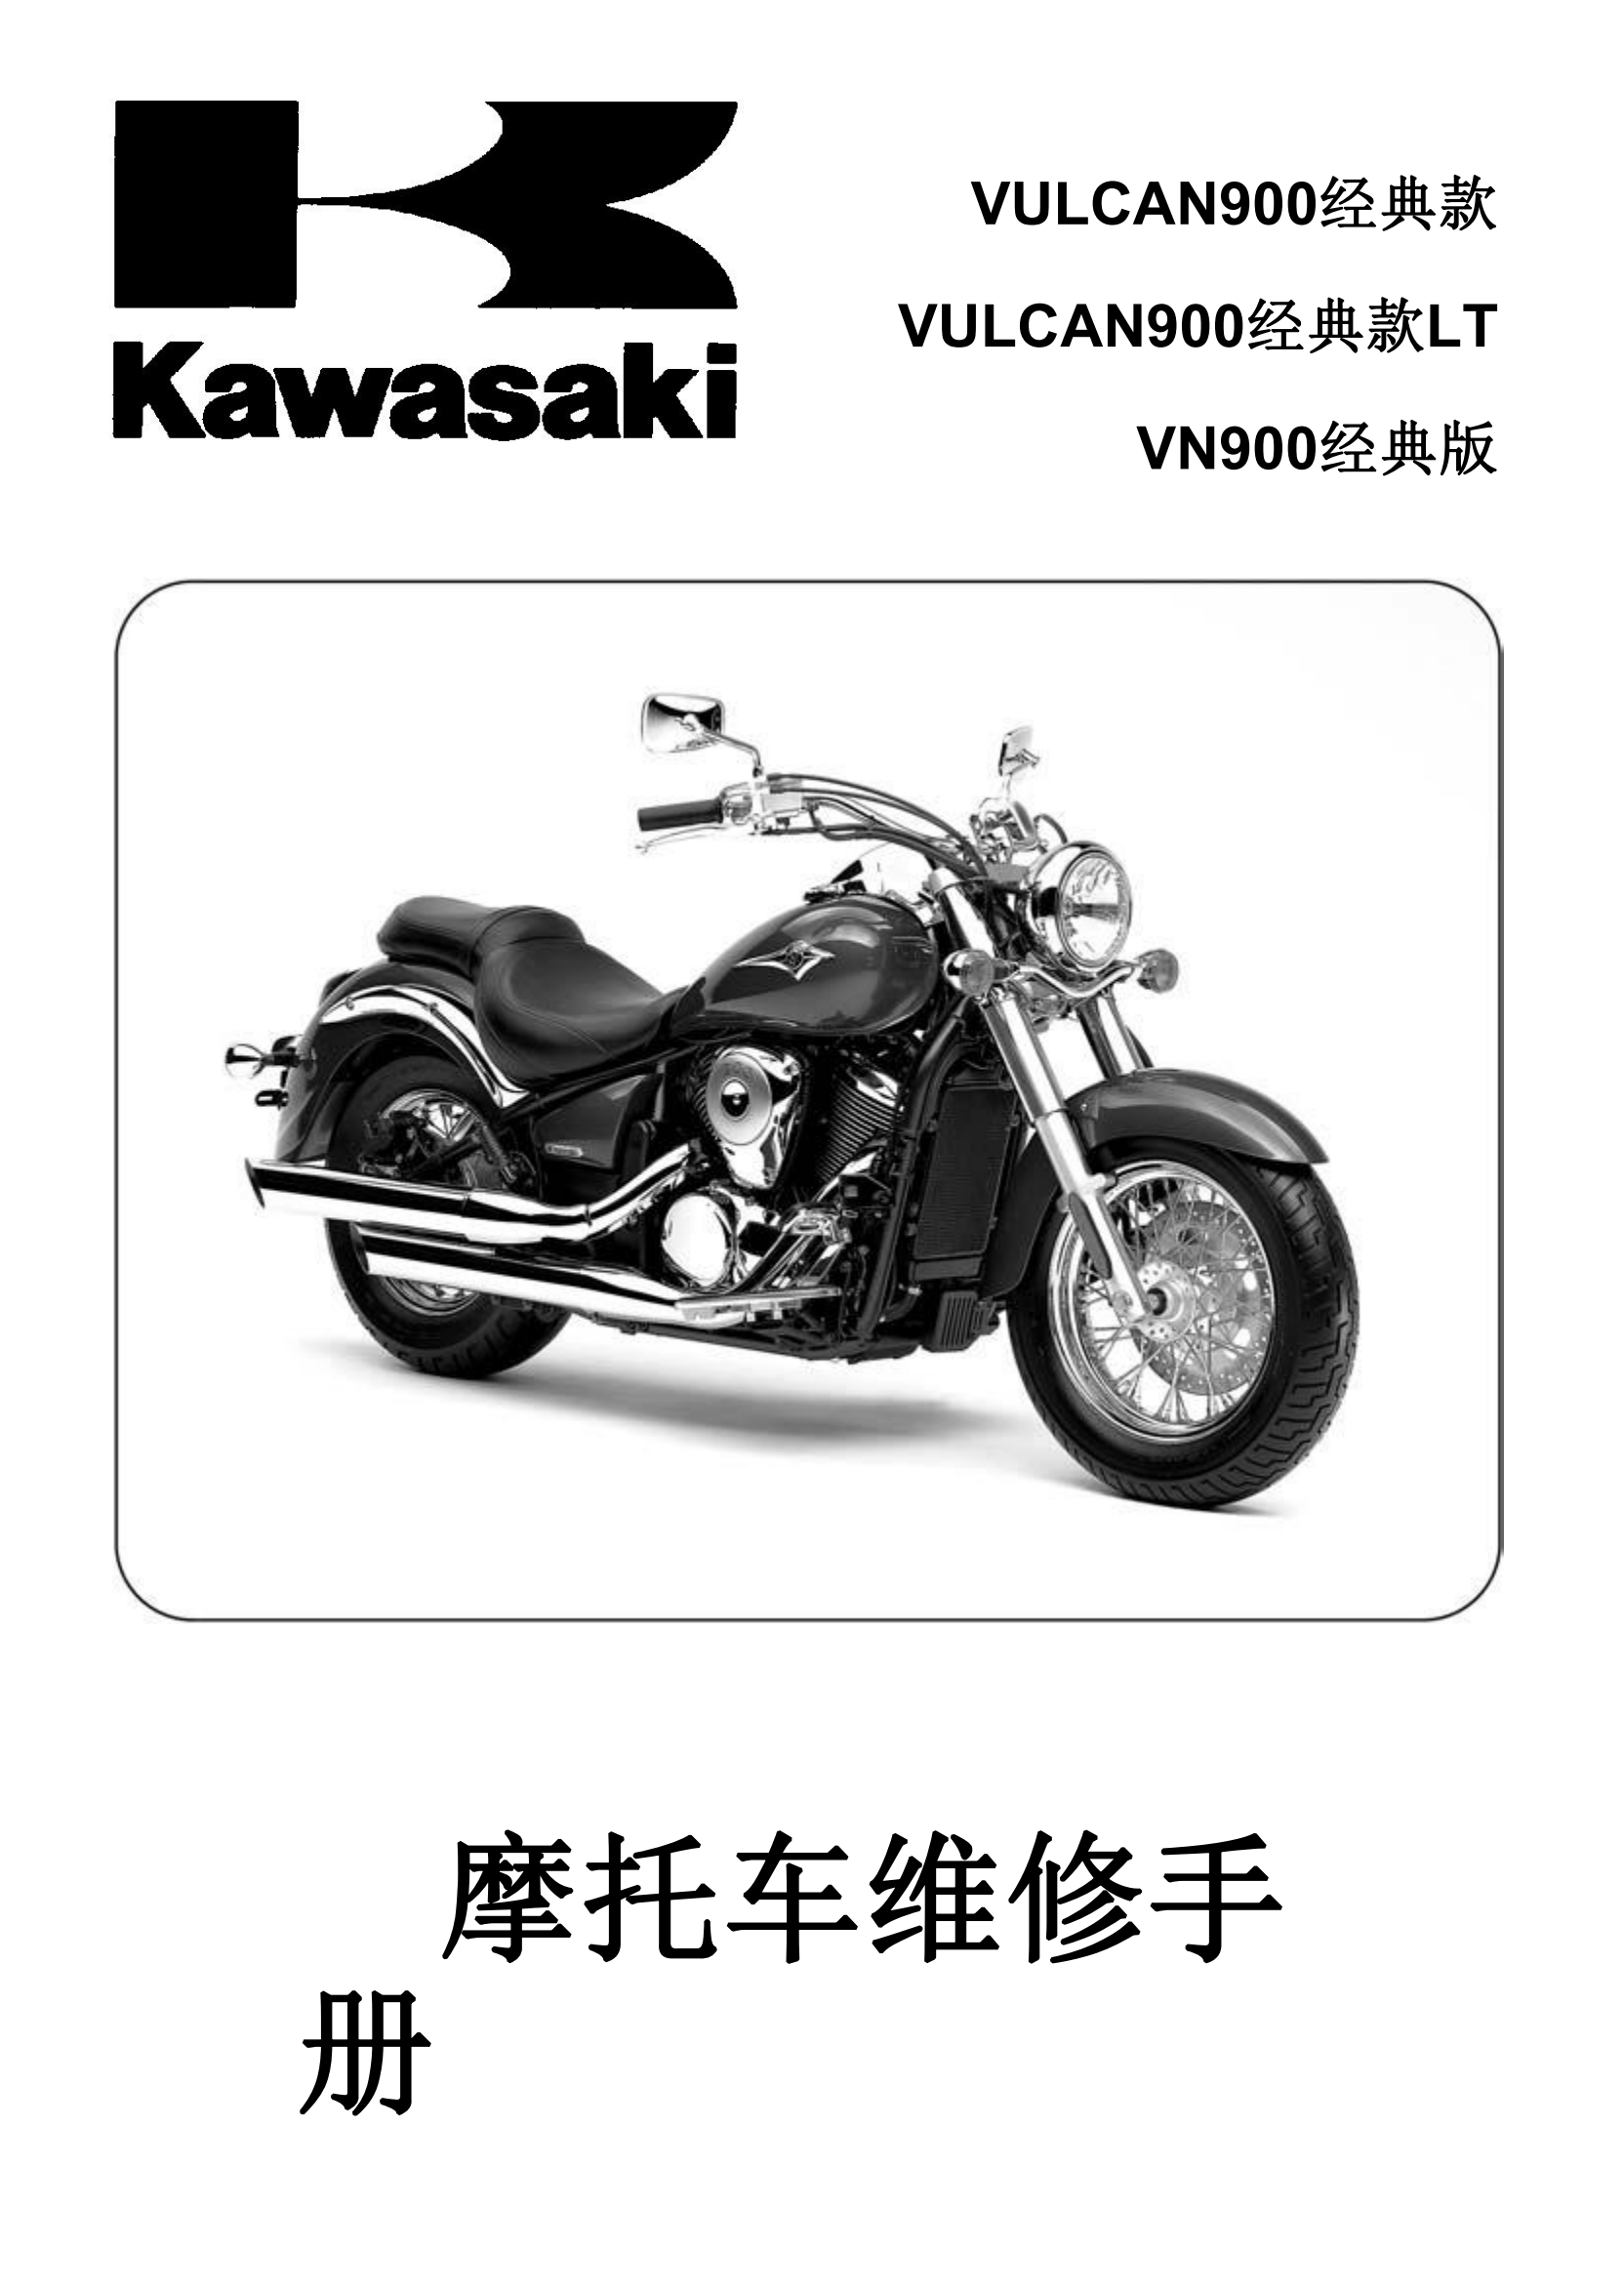 简体中文2007-2015年火神900 VULCAN900 CLASSIC LT vn900 维修手册插图